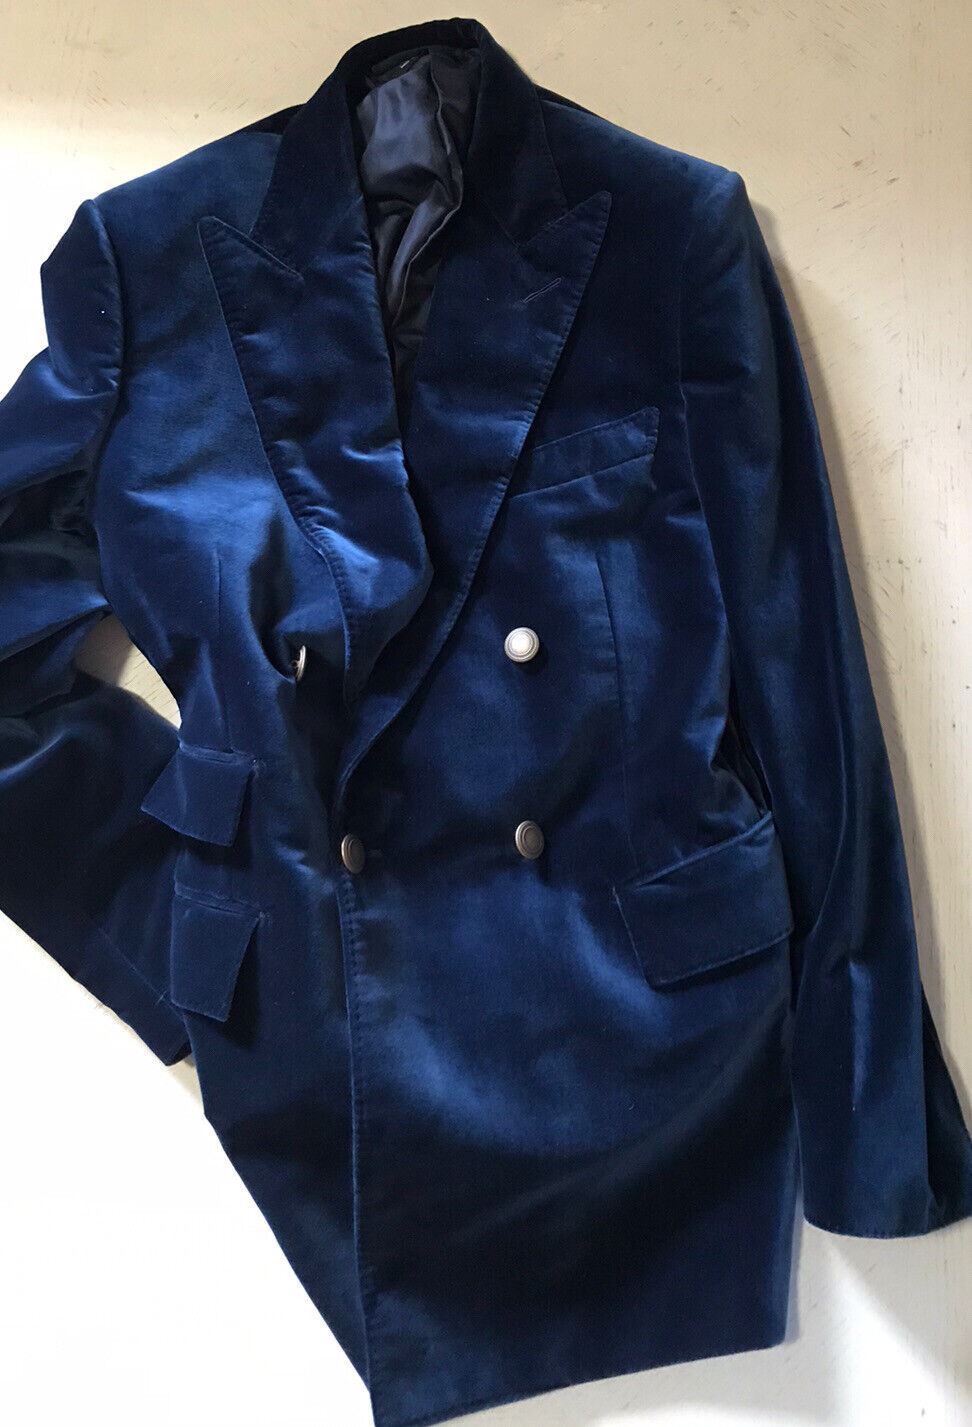 NWT $3970 Мужская бархатная вельветовая куртка TOM FORD Atticus Темно-синяя 38 US/50 EU Switz